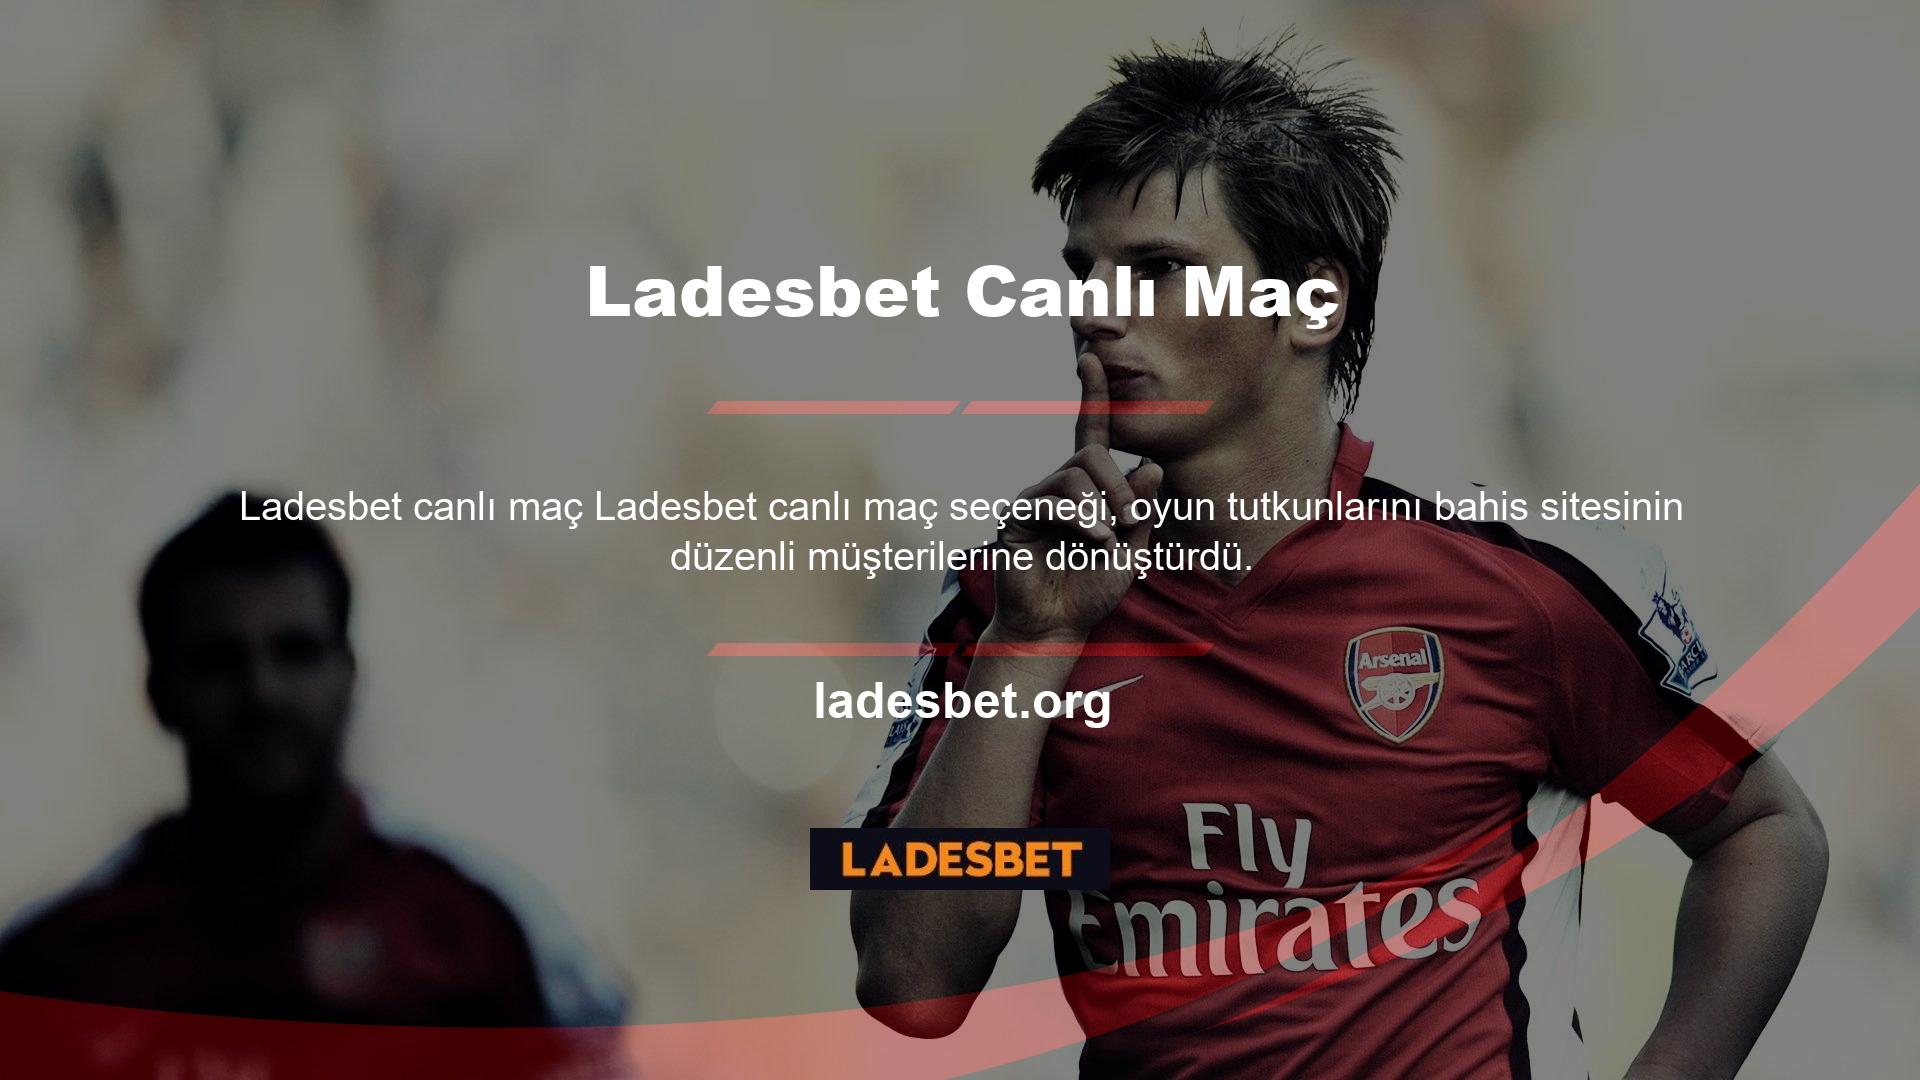 Ladesbet TV'de canlı uluslararası maçları ve spor etkinliklerini ücretsiz olarak yayınlamakta ve web sitesinde aktif içerik yayınlamaktadır